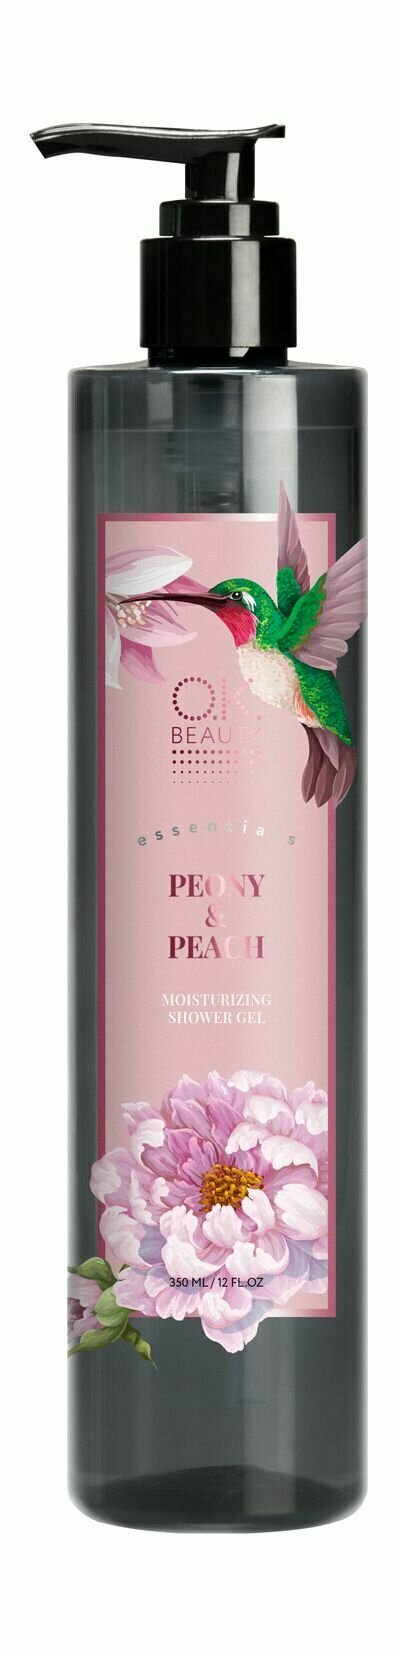 Увлажняющий гель для душа с ароматом пиона и персика / O.K.Beauty Essentials Peony& Peach Moisturizing Shower Gel